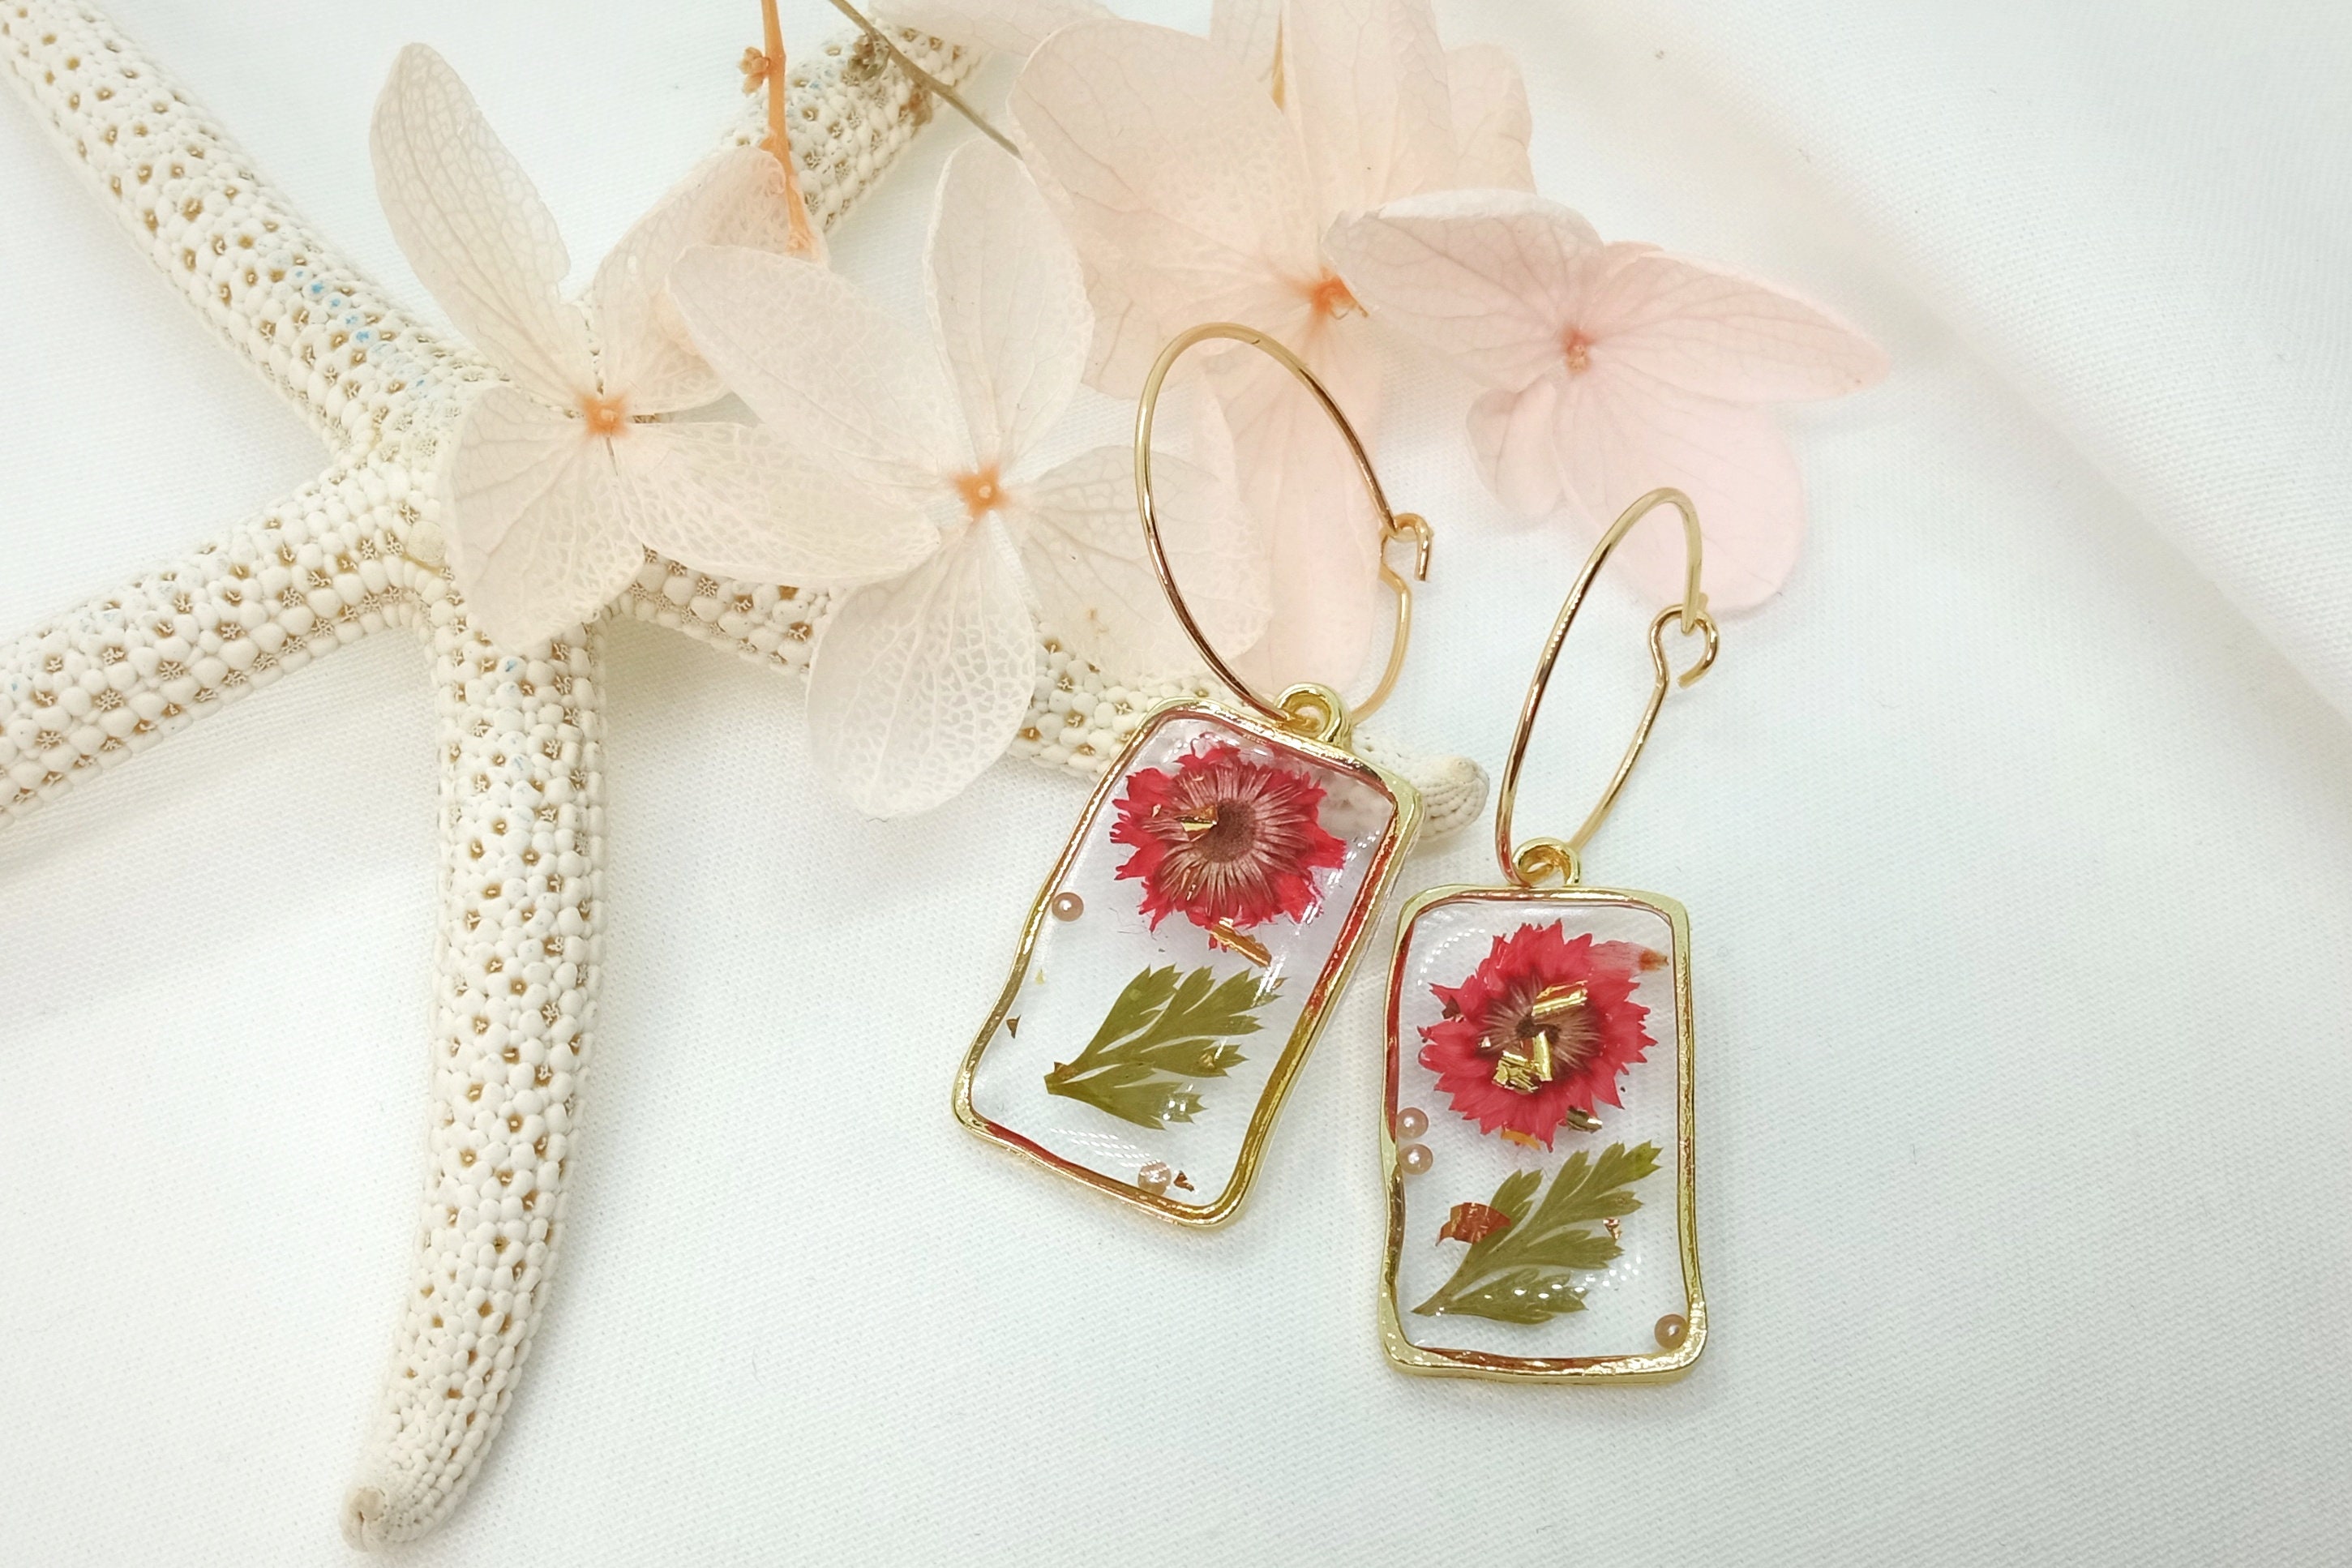 Details more than 192 resin flower earrings best